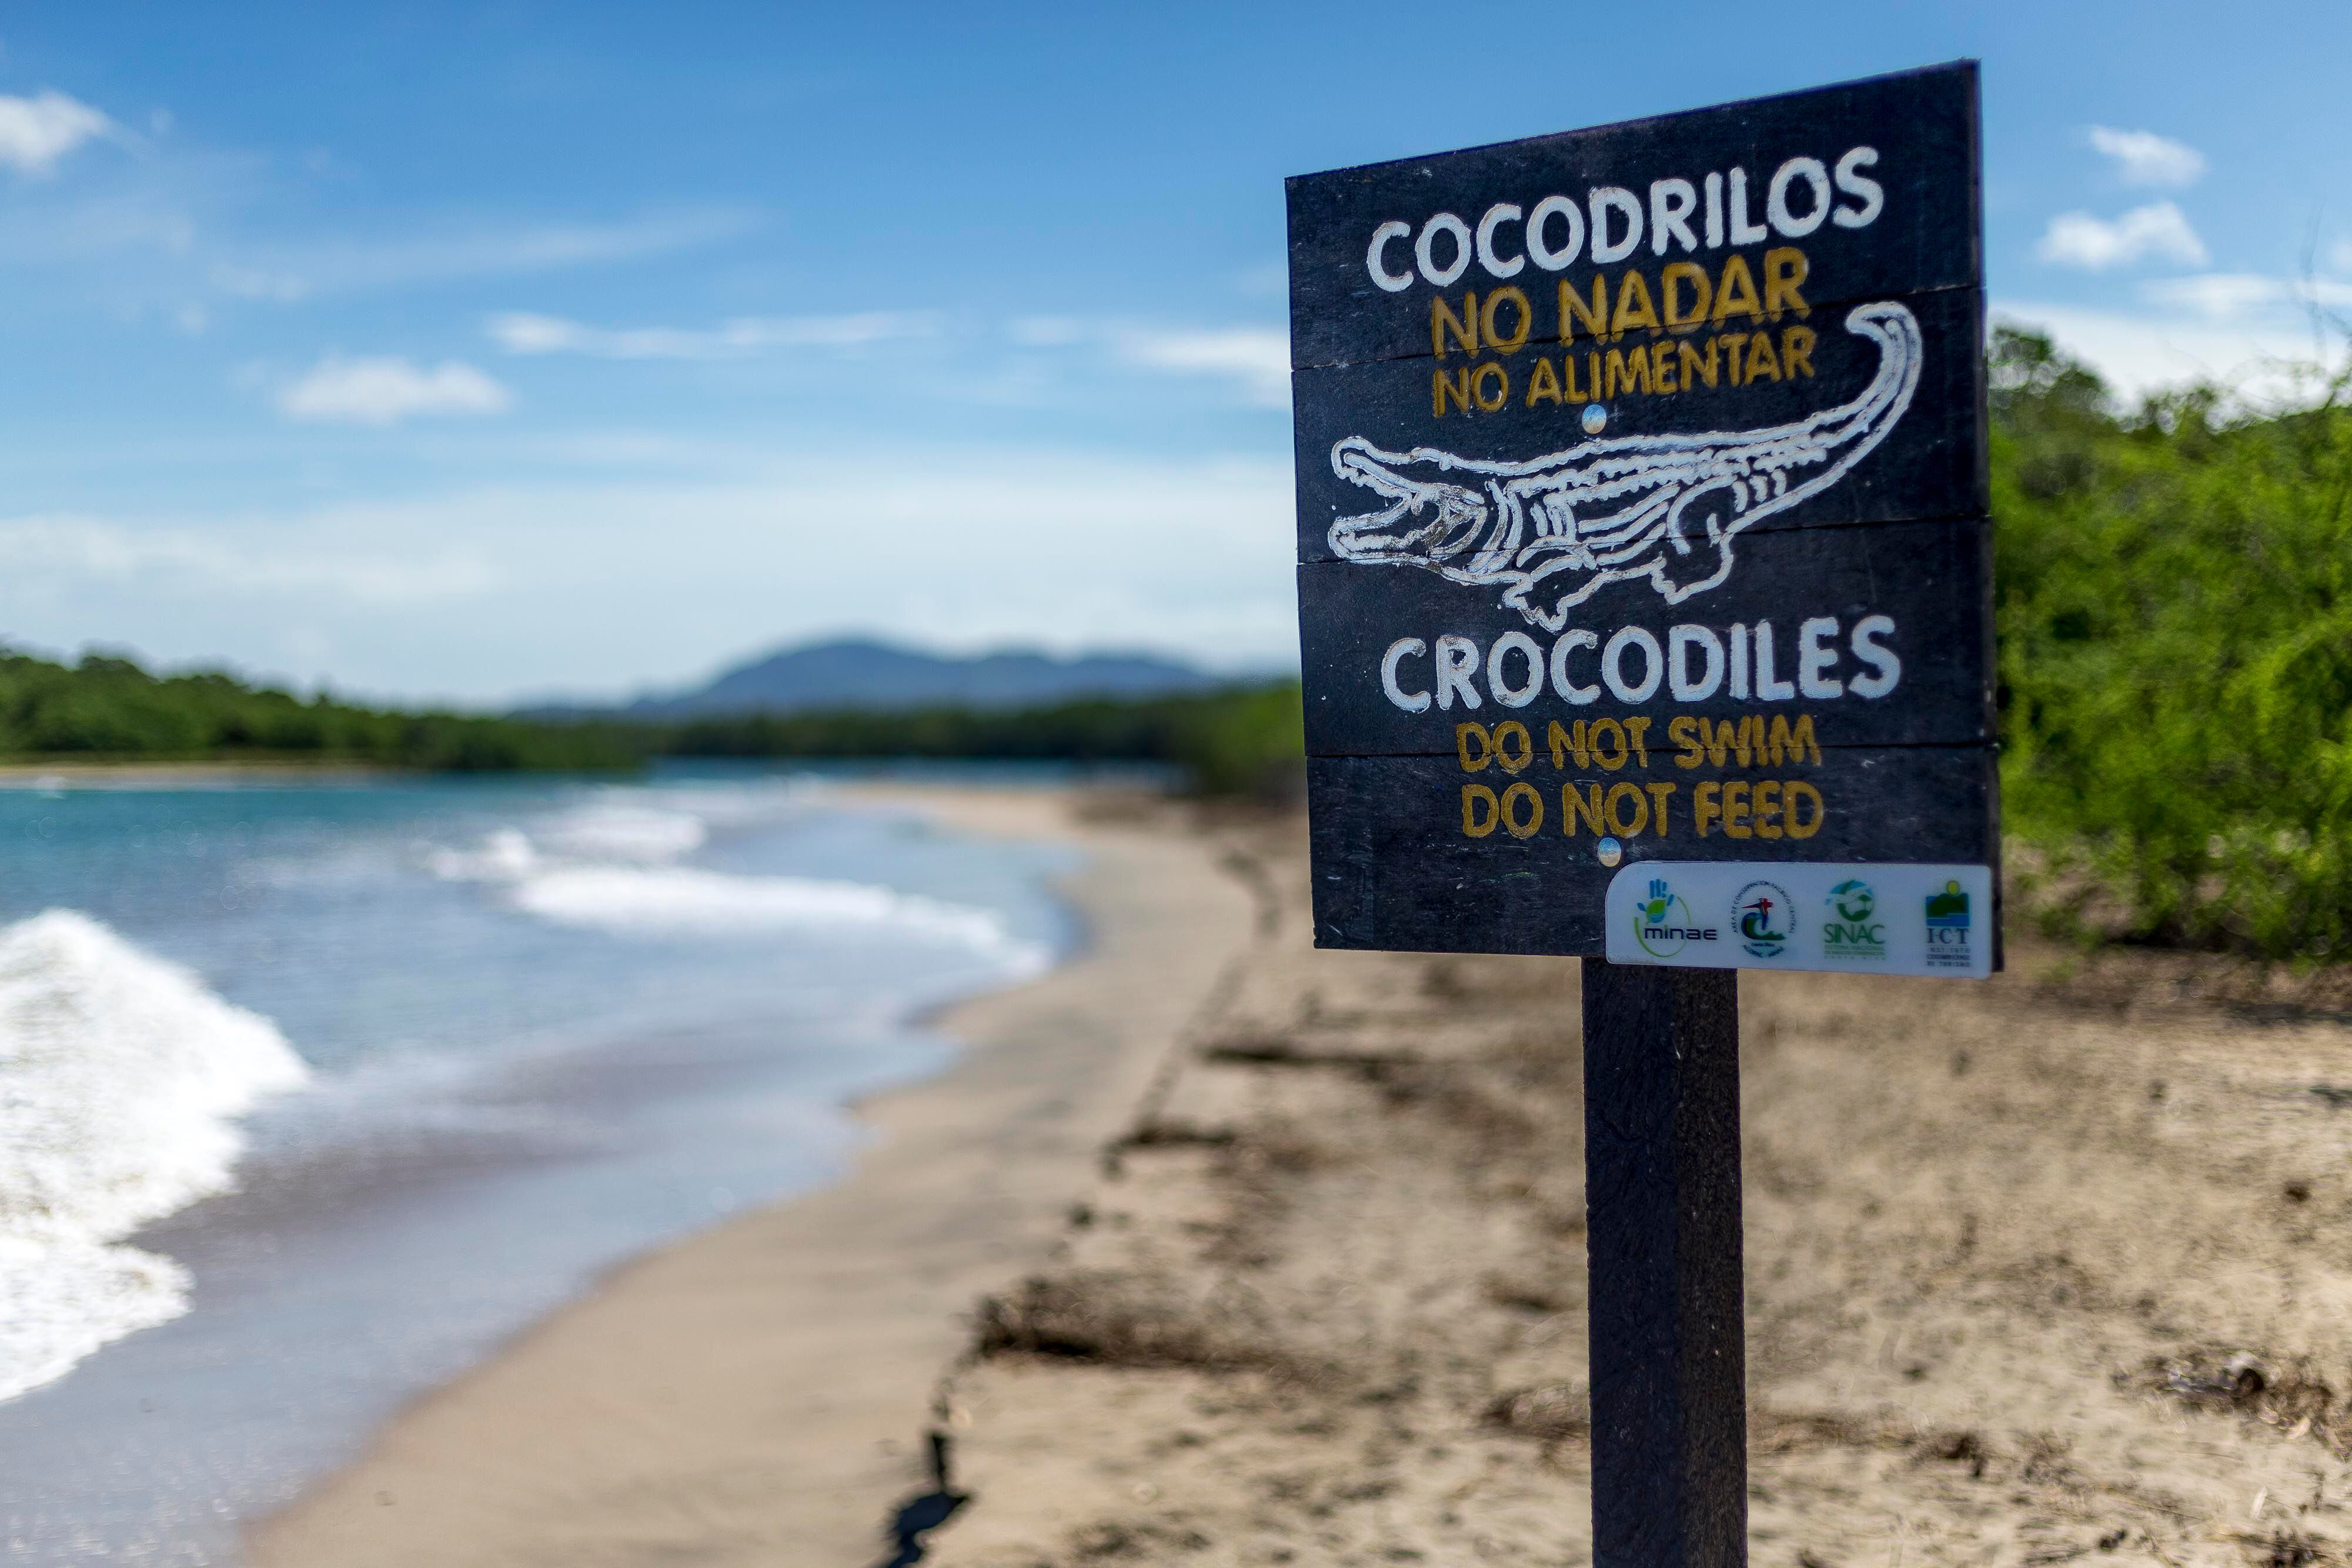 Ticos enseñaron a los cocodrilos que la presencia humana significa comida |  La Nación